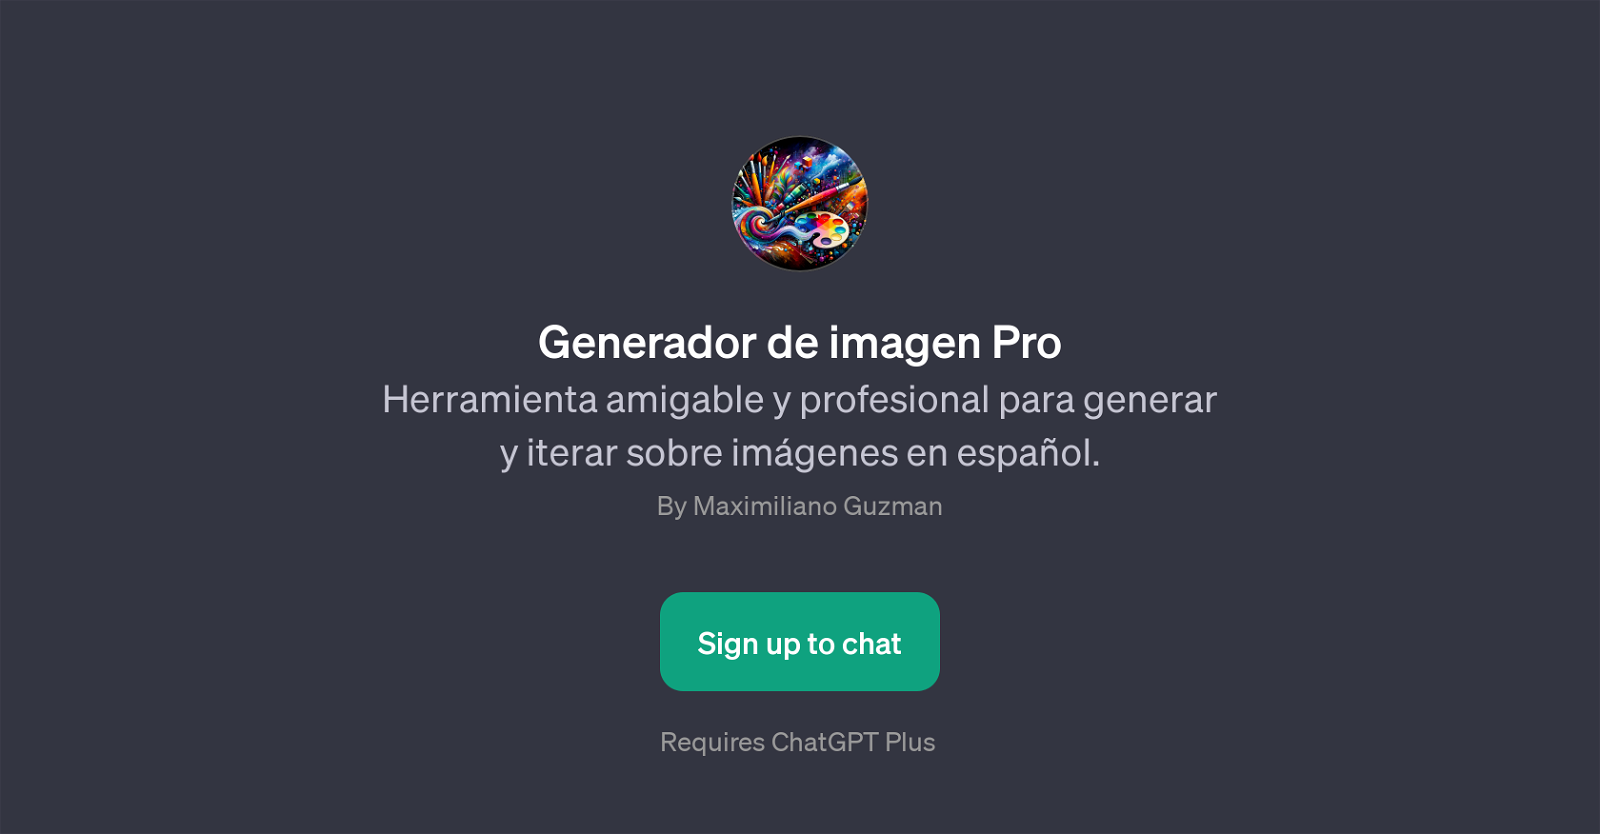 Generador de imagen Pro website